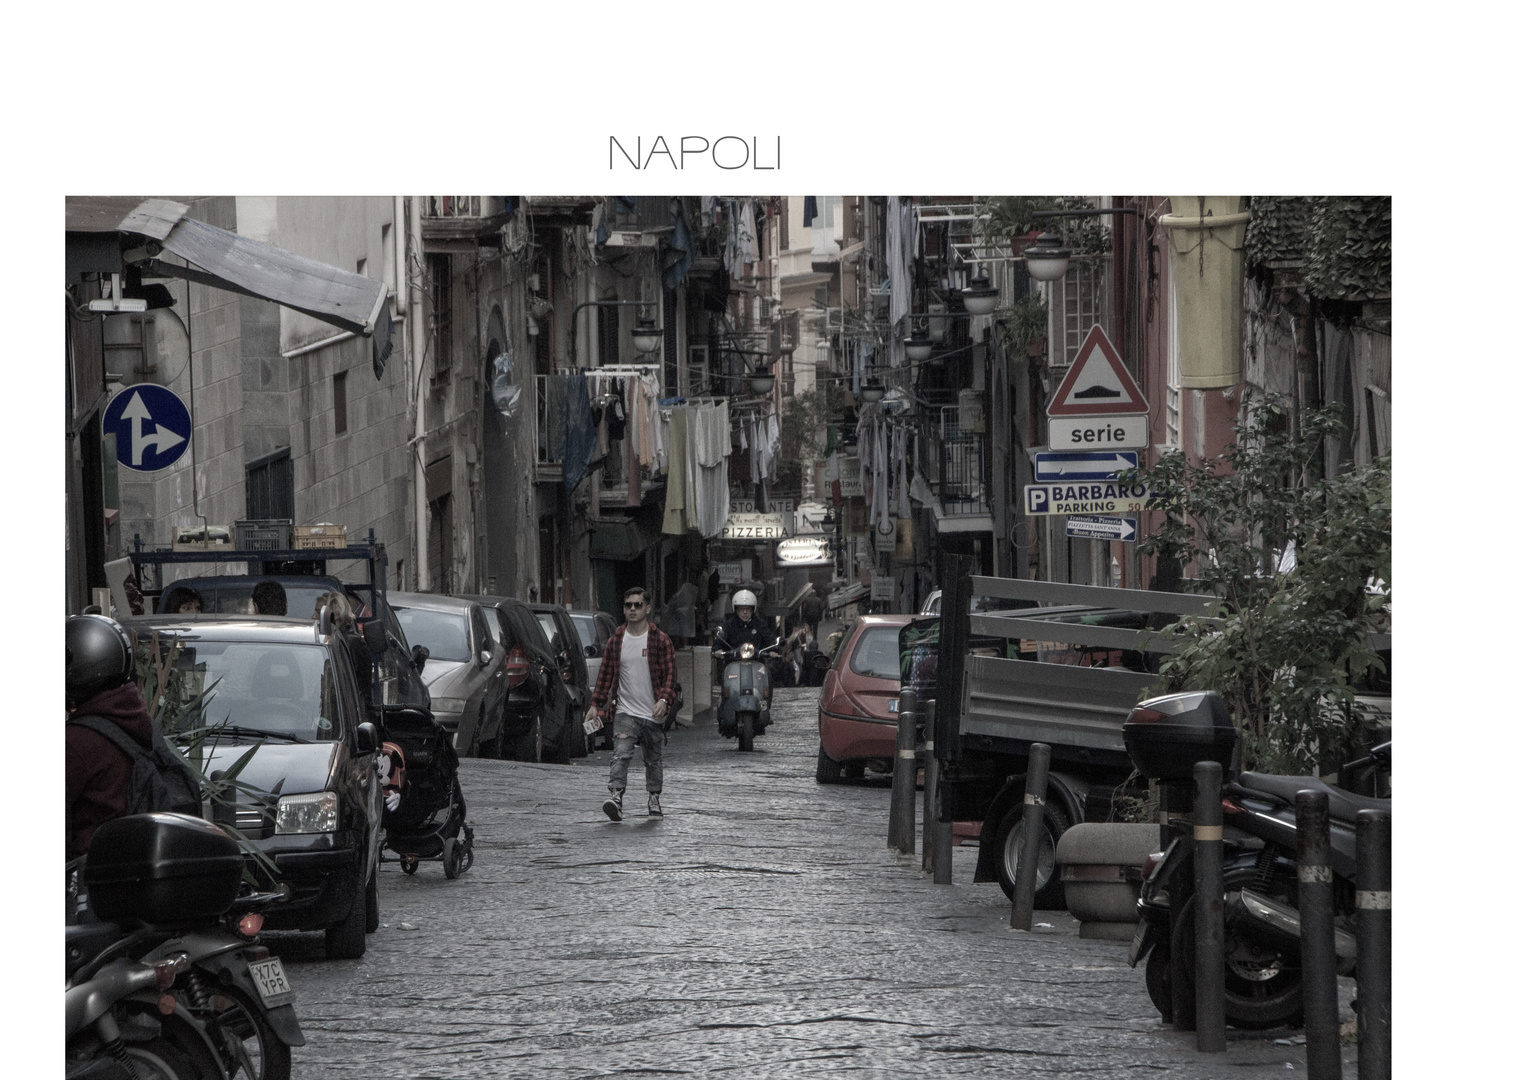 Napoli, meine große Liebe